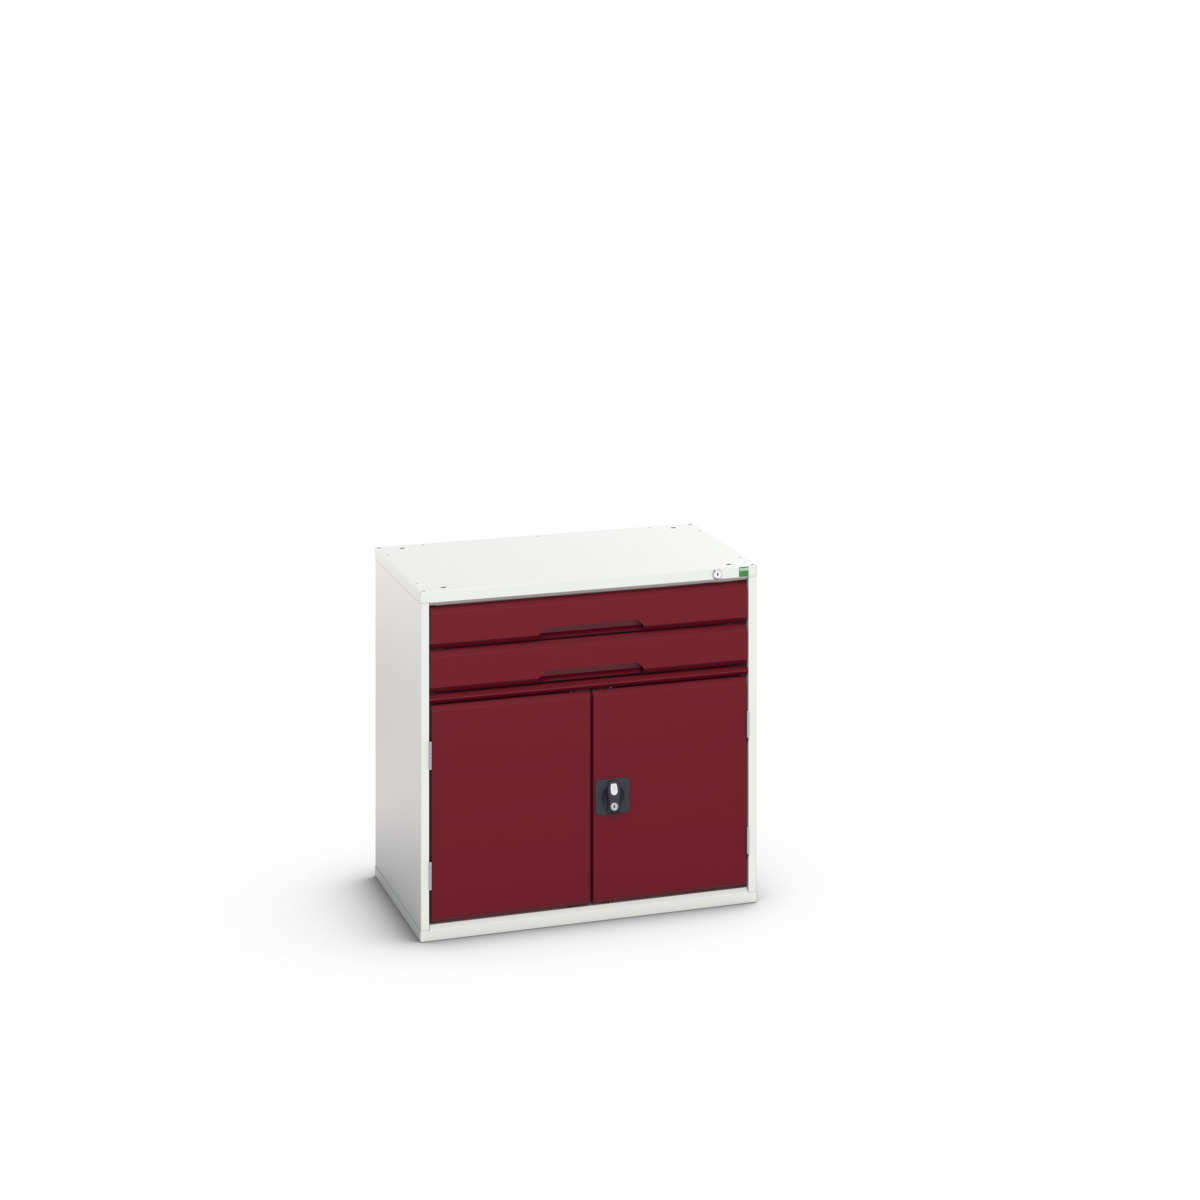 16925116.24 - verso drawer-door cabinet